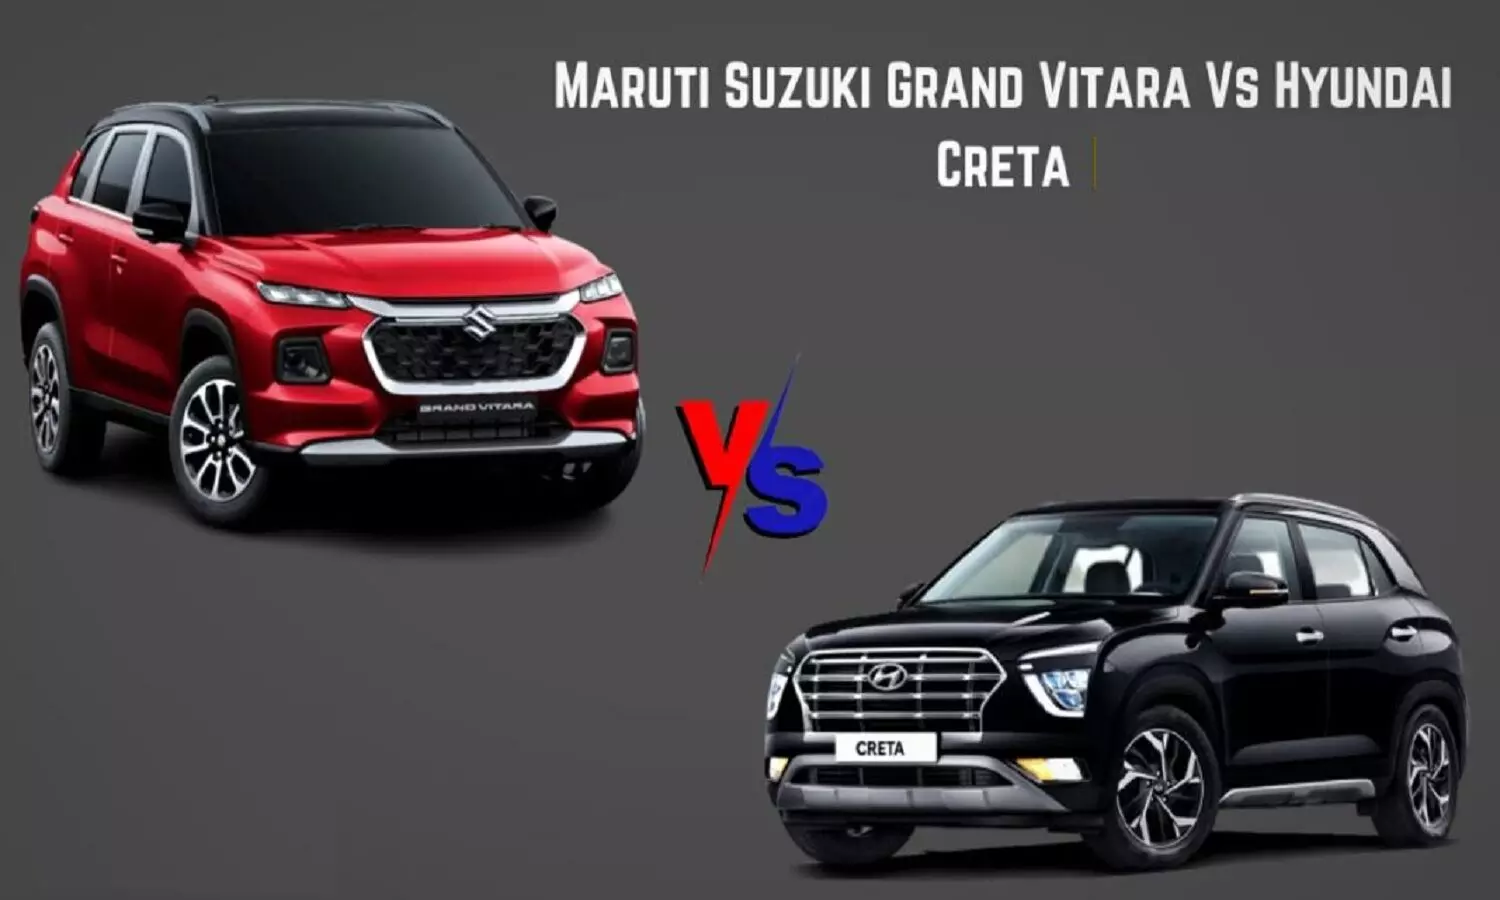 Hyundai Creta vs Maruti Grand Vitara Comparison : क्रेटा और ग्रैंड विटारा में कौन बेहतर है जानें डिटेल कम्पेरिजन